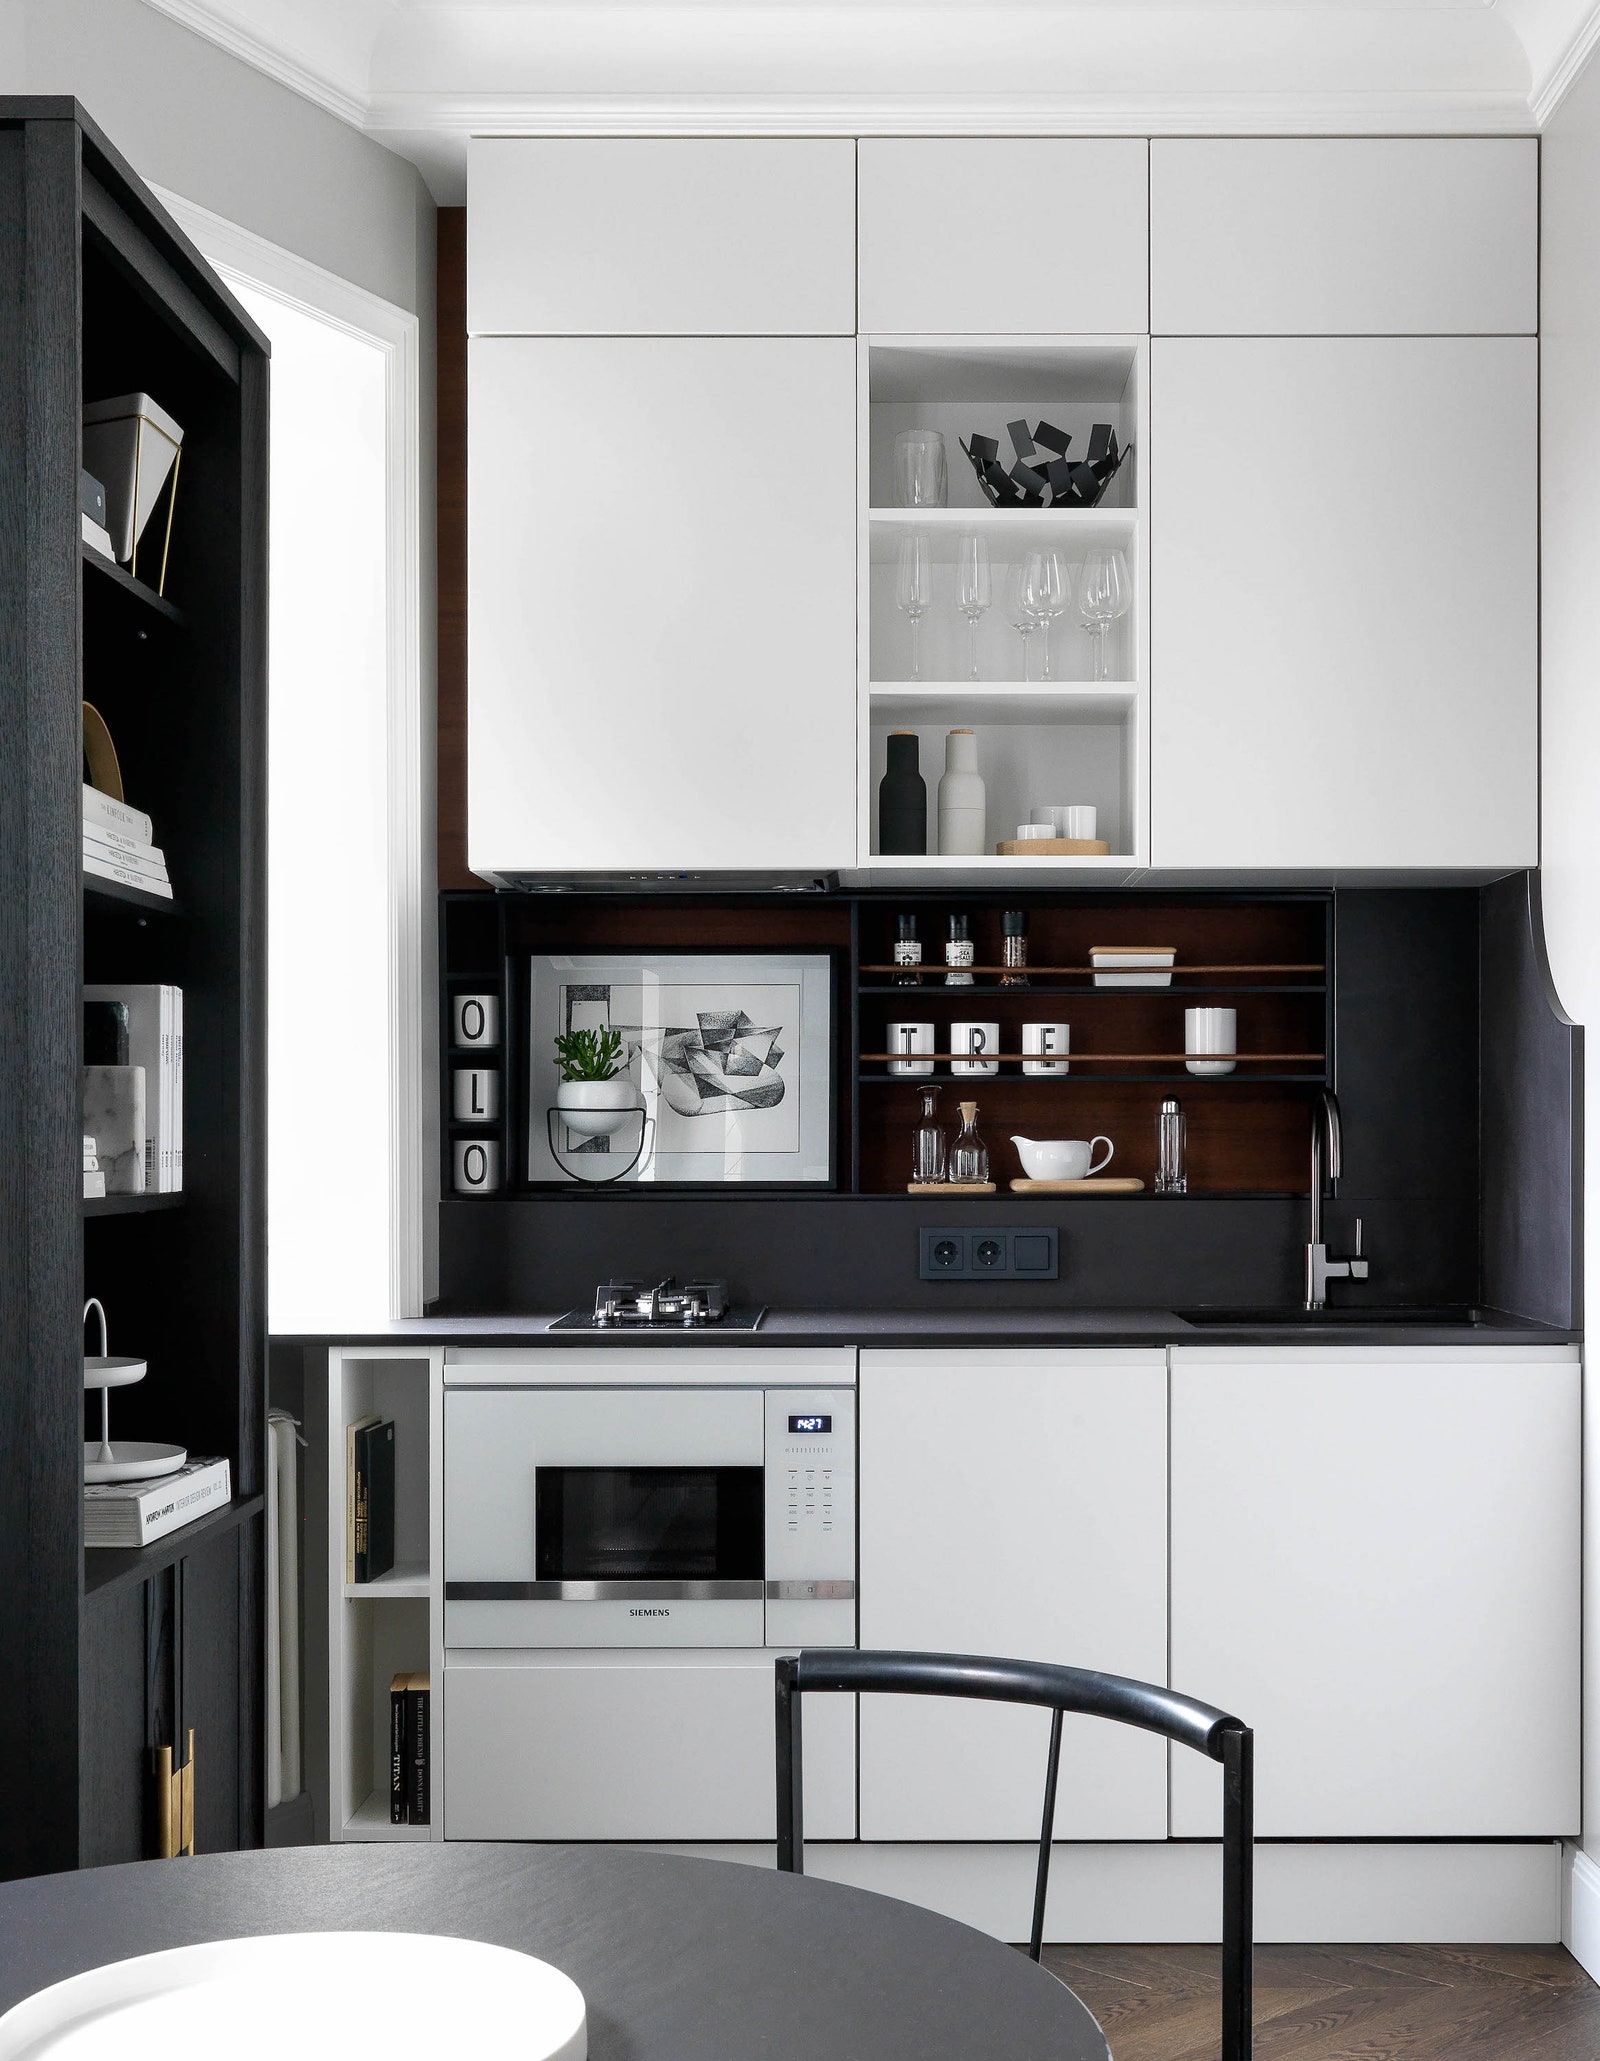 Квартира площадью 50 м² для любителей скандинавского стиля спальня спрятана за двойными дверями а компактную кухню от...